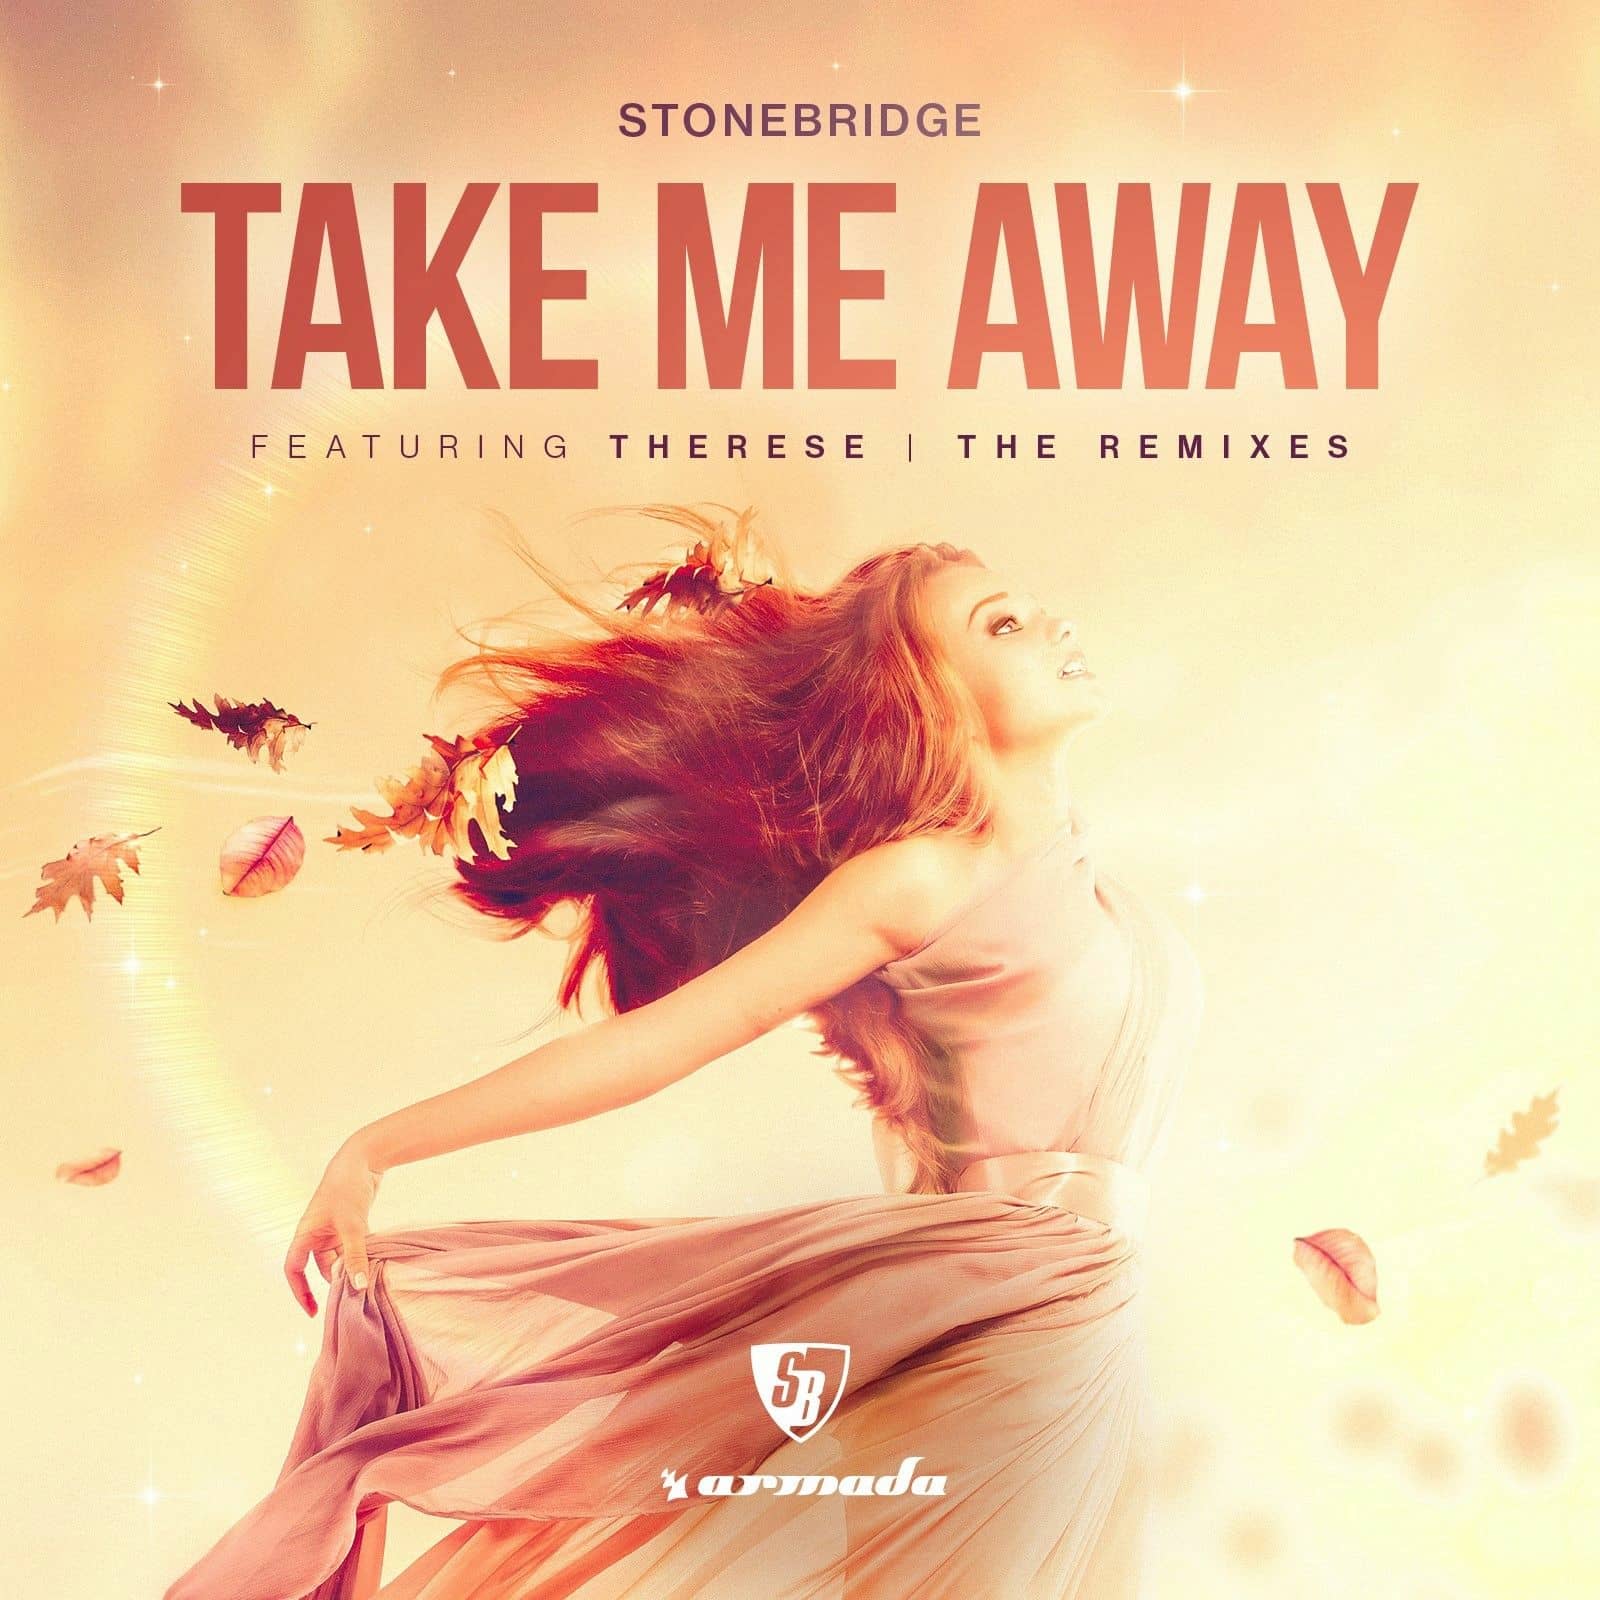 Just take me away. Take me away. Stonebridge ft. Therese. Stonebridge feat. Therese take me away (2018 Remaster). Song take me away.